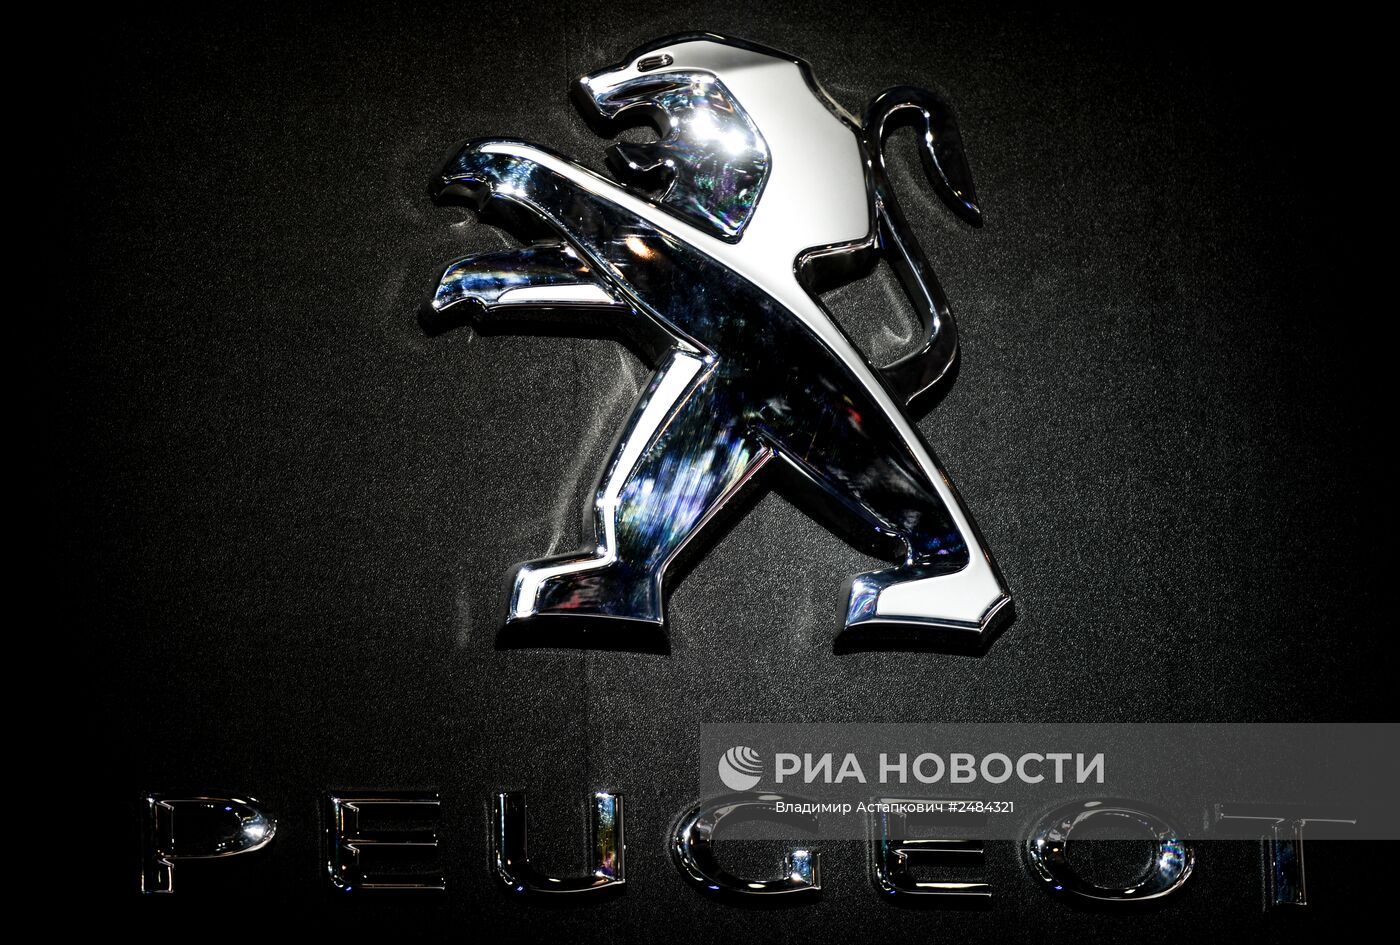 Московский международный автомобильный салон 2014 открылся для посетителей